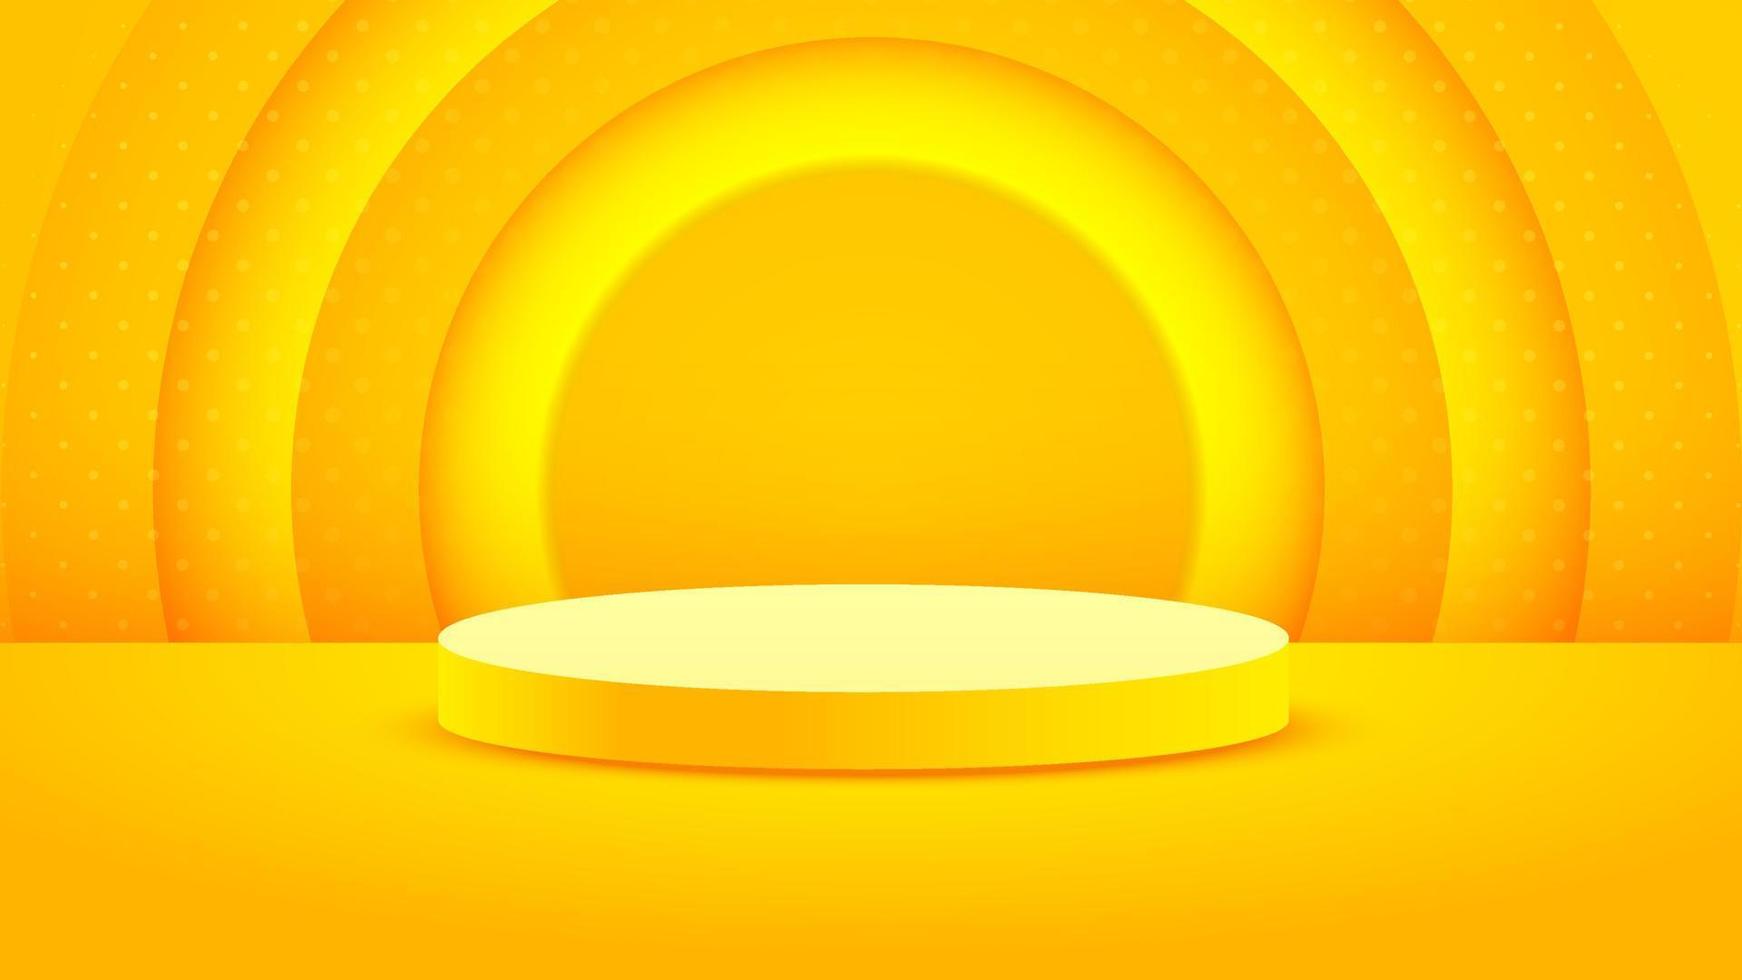 minimalismo de fondo en relieve amarillo realista con vector de podio en blanco 3d para colocar su producto, ilustración de banner abstracto